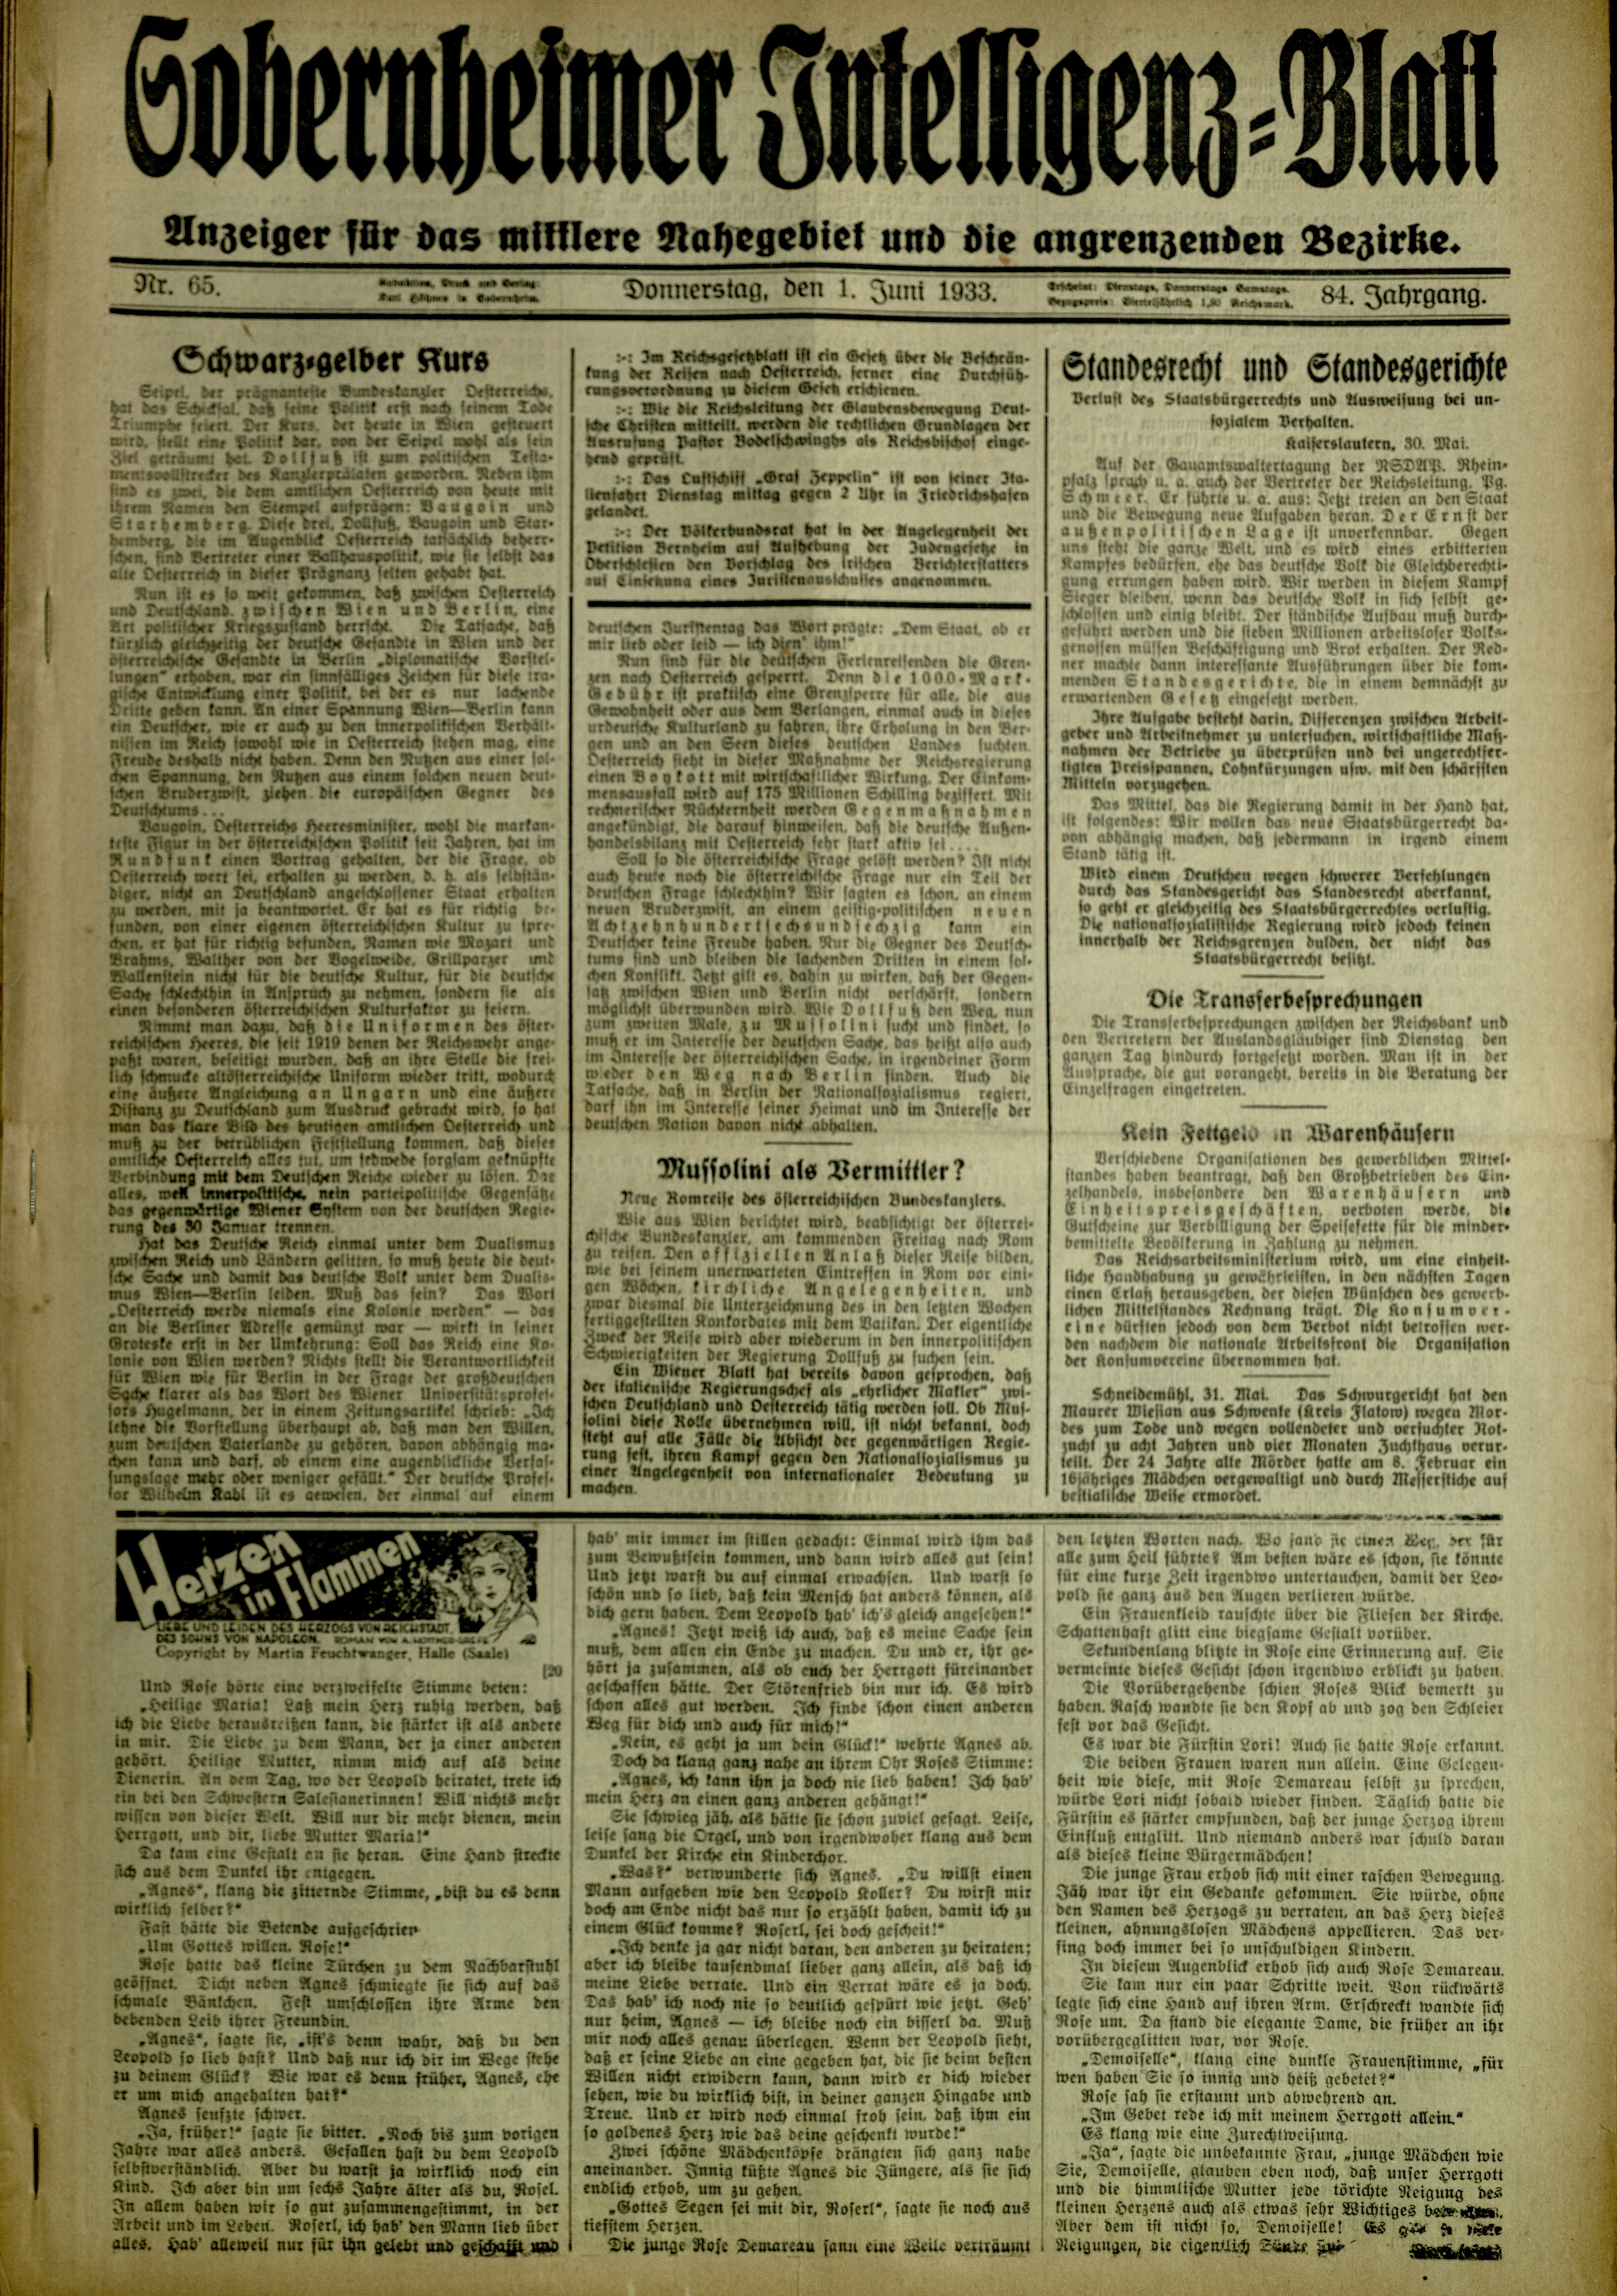 Zeitung: Sobernheimer Intelligenzblatt; Juni 1933, Jg. 84 Nr. 65 (Heimatmuseum Bad Sobernheim CC BY-NC-SA)